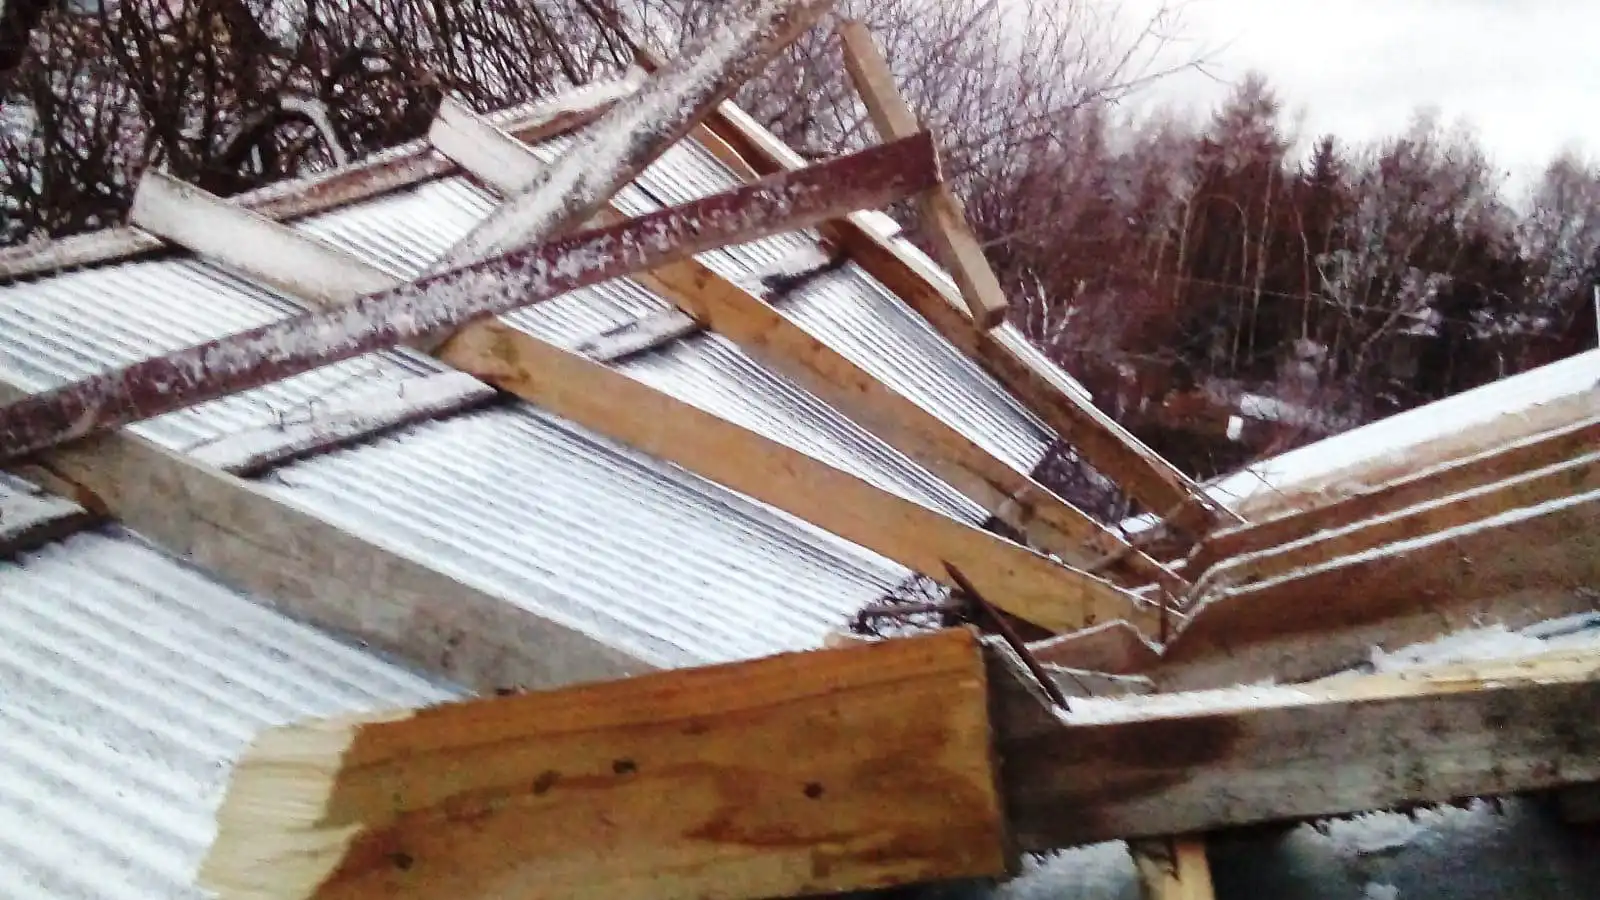 Silny wiatr uszkodził dach budynku gospodarczego w Wojnarowej. Interweniowali strażacy